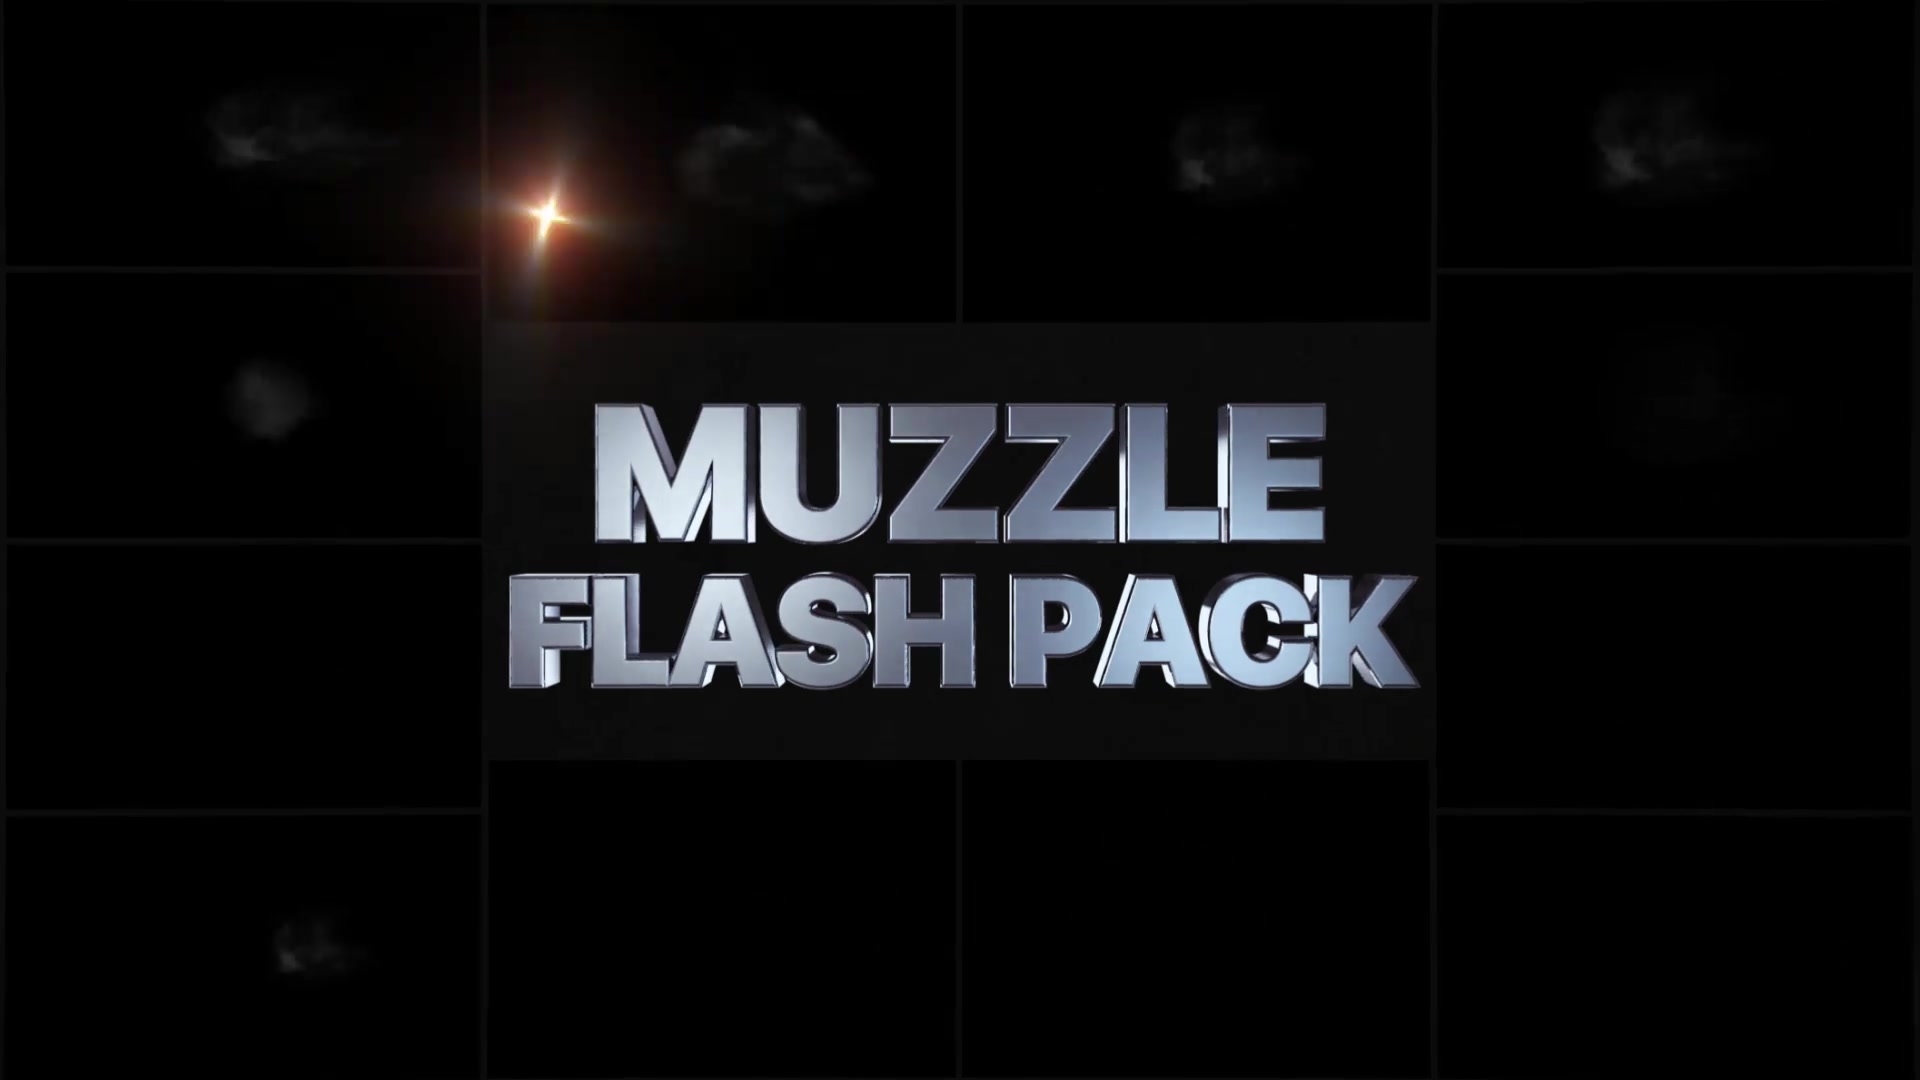 Muzzle Flash Pack 03 | Premiere Pro MOGRT Videohive 31840971 Premiere Pro Image 3